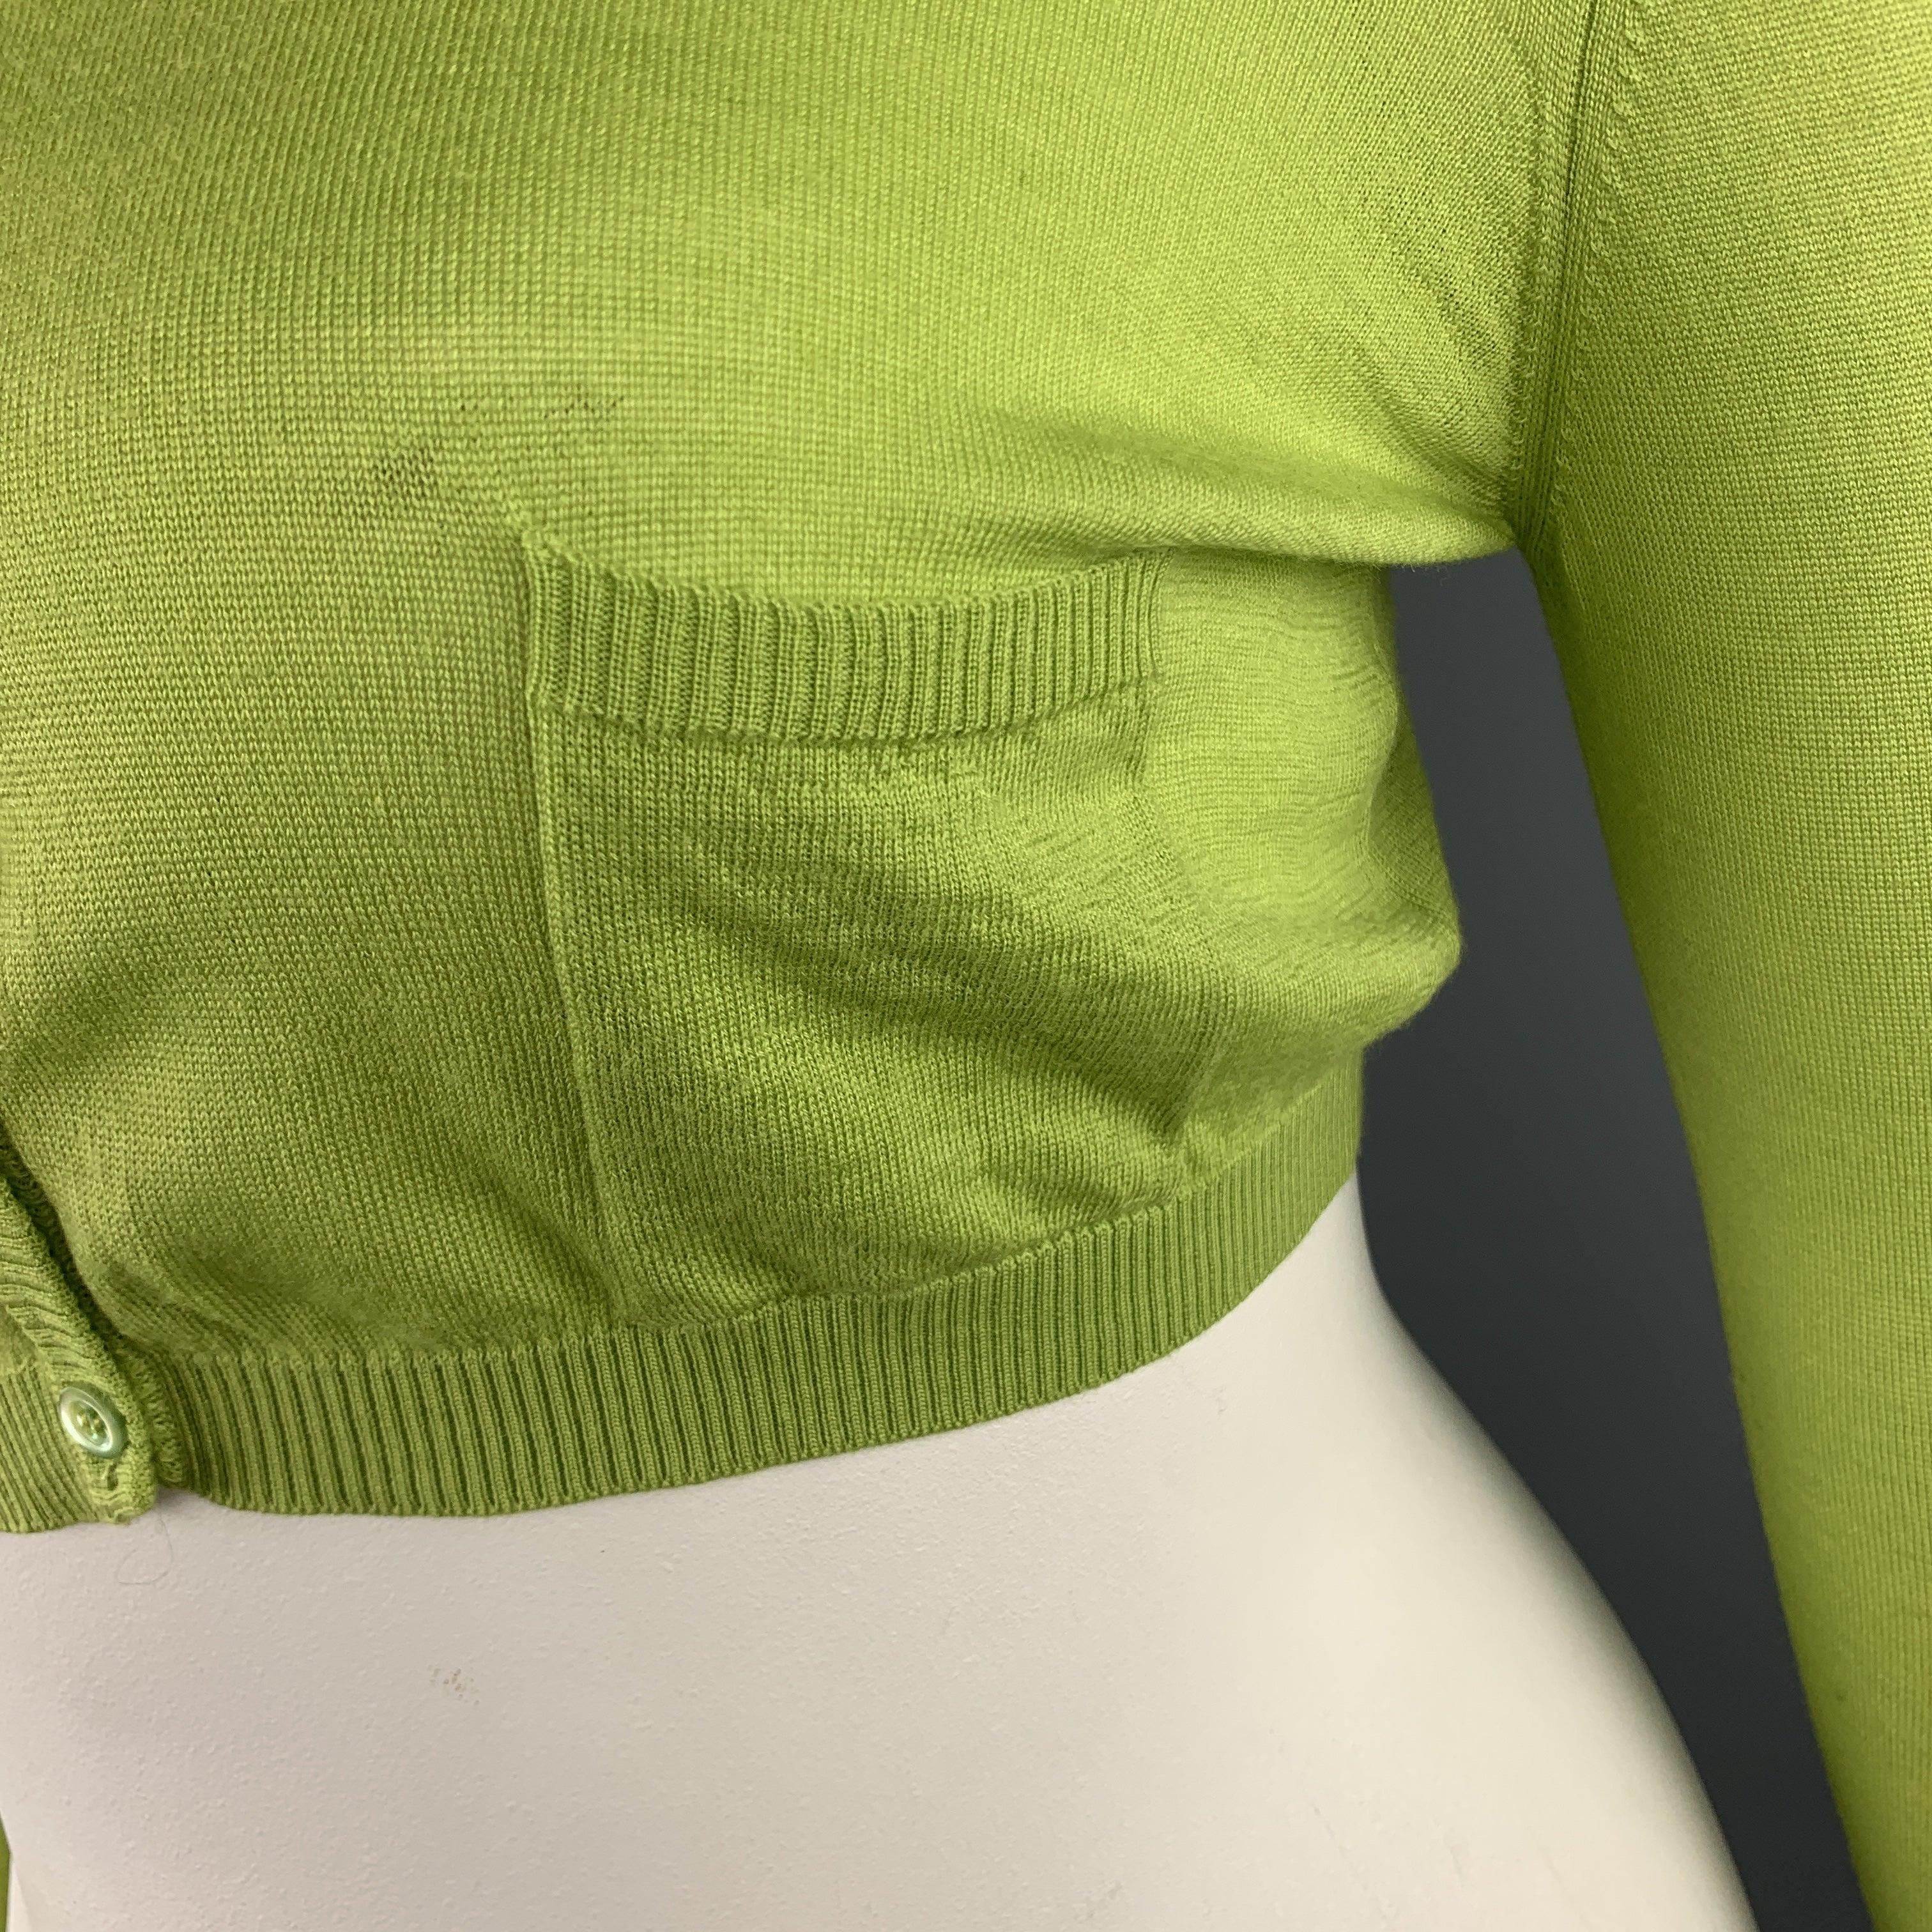 VALENTINO Strickjacke aus lindgrünem Wollgemisch mit Rundhalsausschnitt, abgeschnittenem Saum und aufgesetzten Taschen. Hergestellt in Italien.
Sehr guter gebrauchter Zustand. 

Markiert:   L 

Abmessungen: 
 
Schultern: 17 Zoll Büste: 36 Zoll